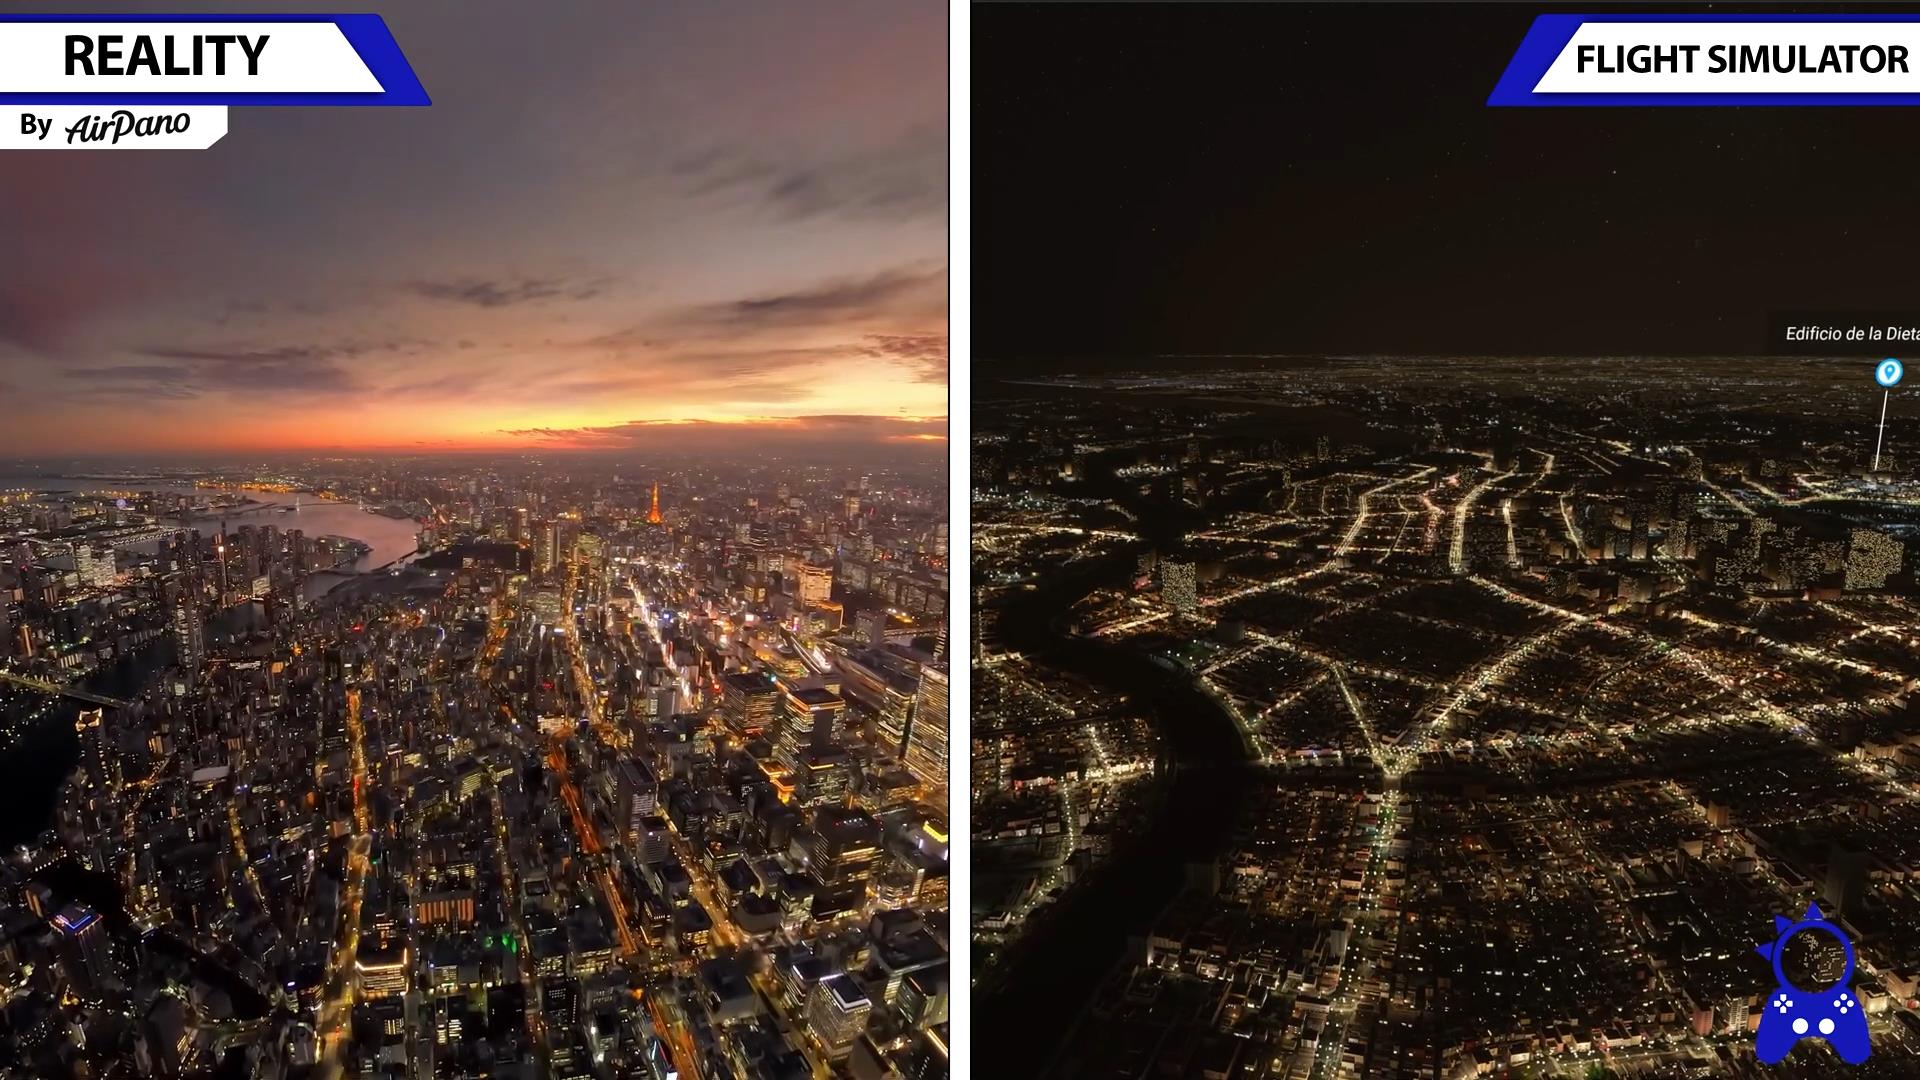 《微软飞行模拟》游戏画面与现实场景对比视频-1168 